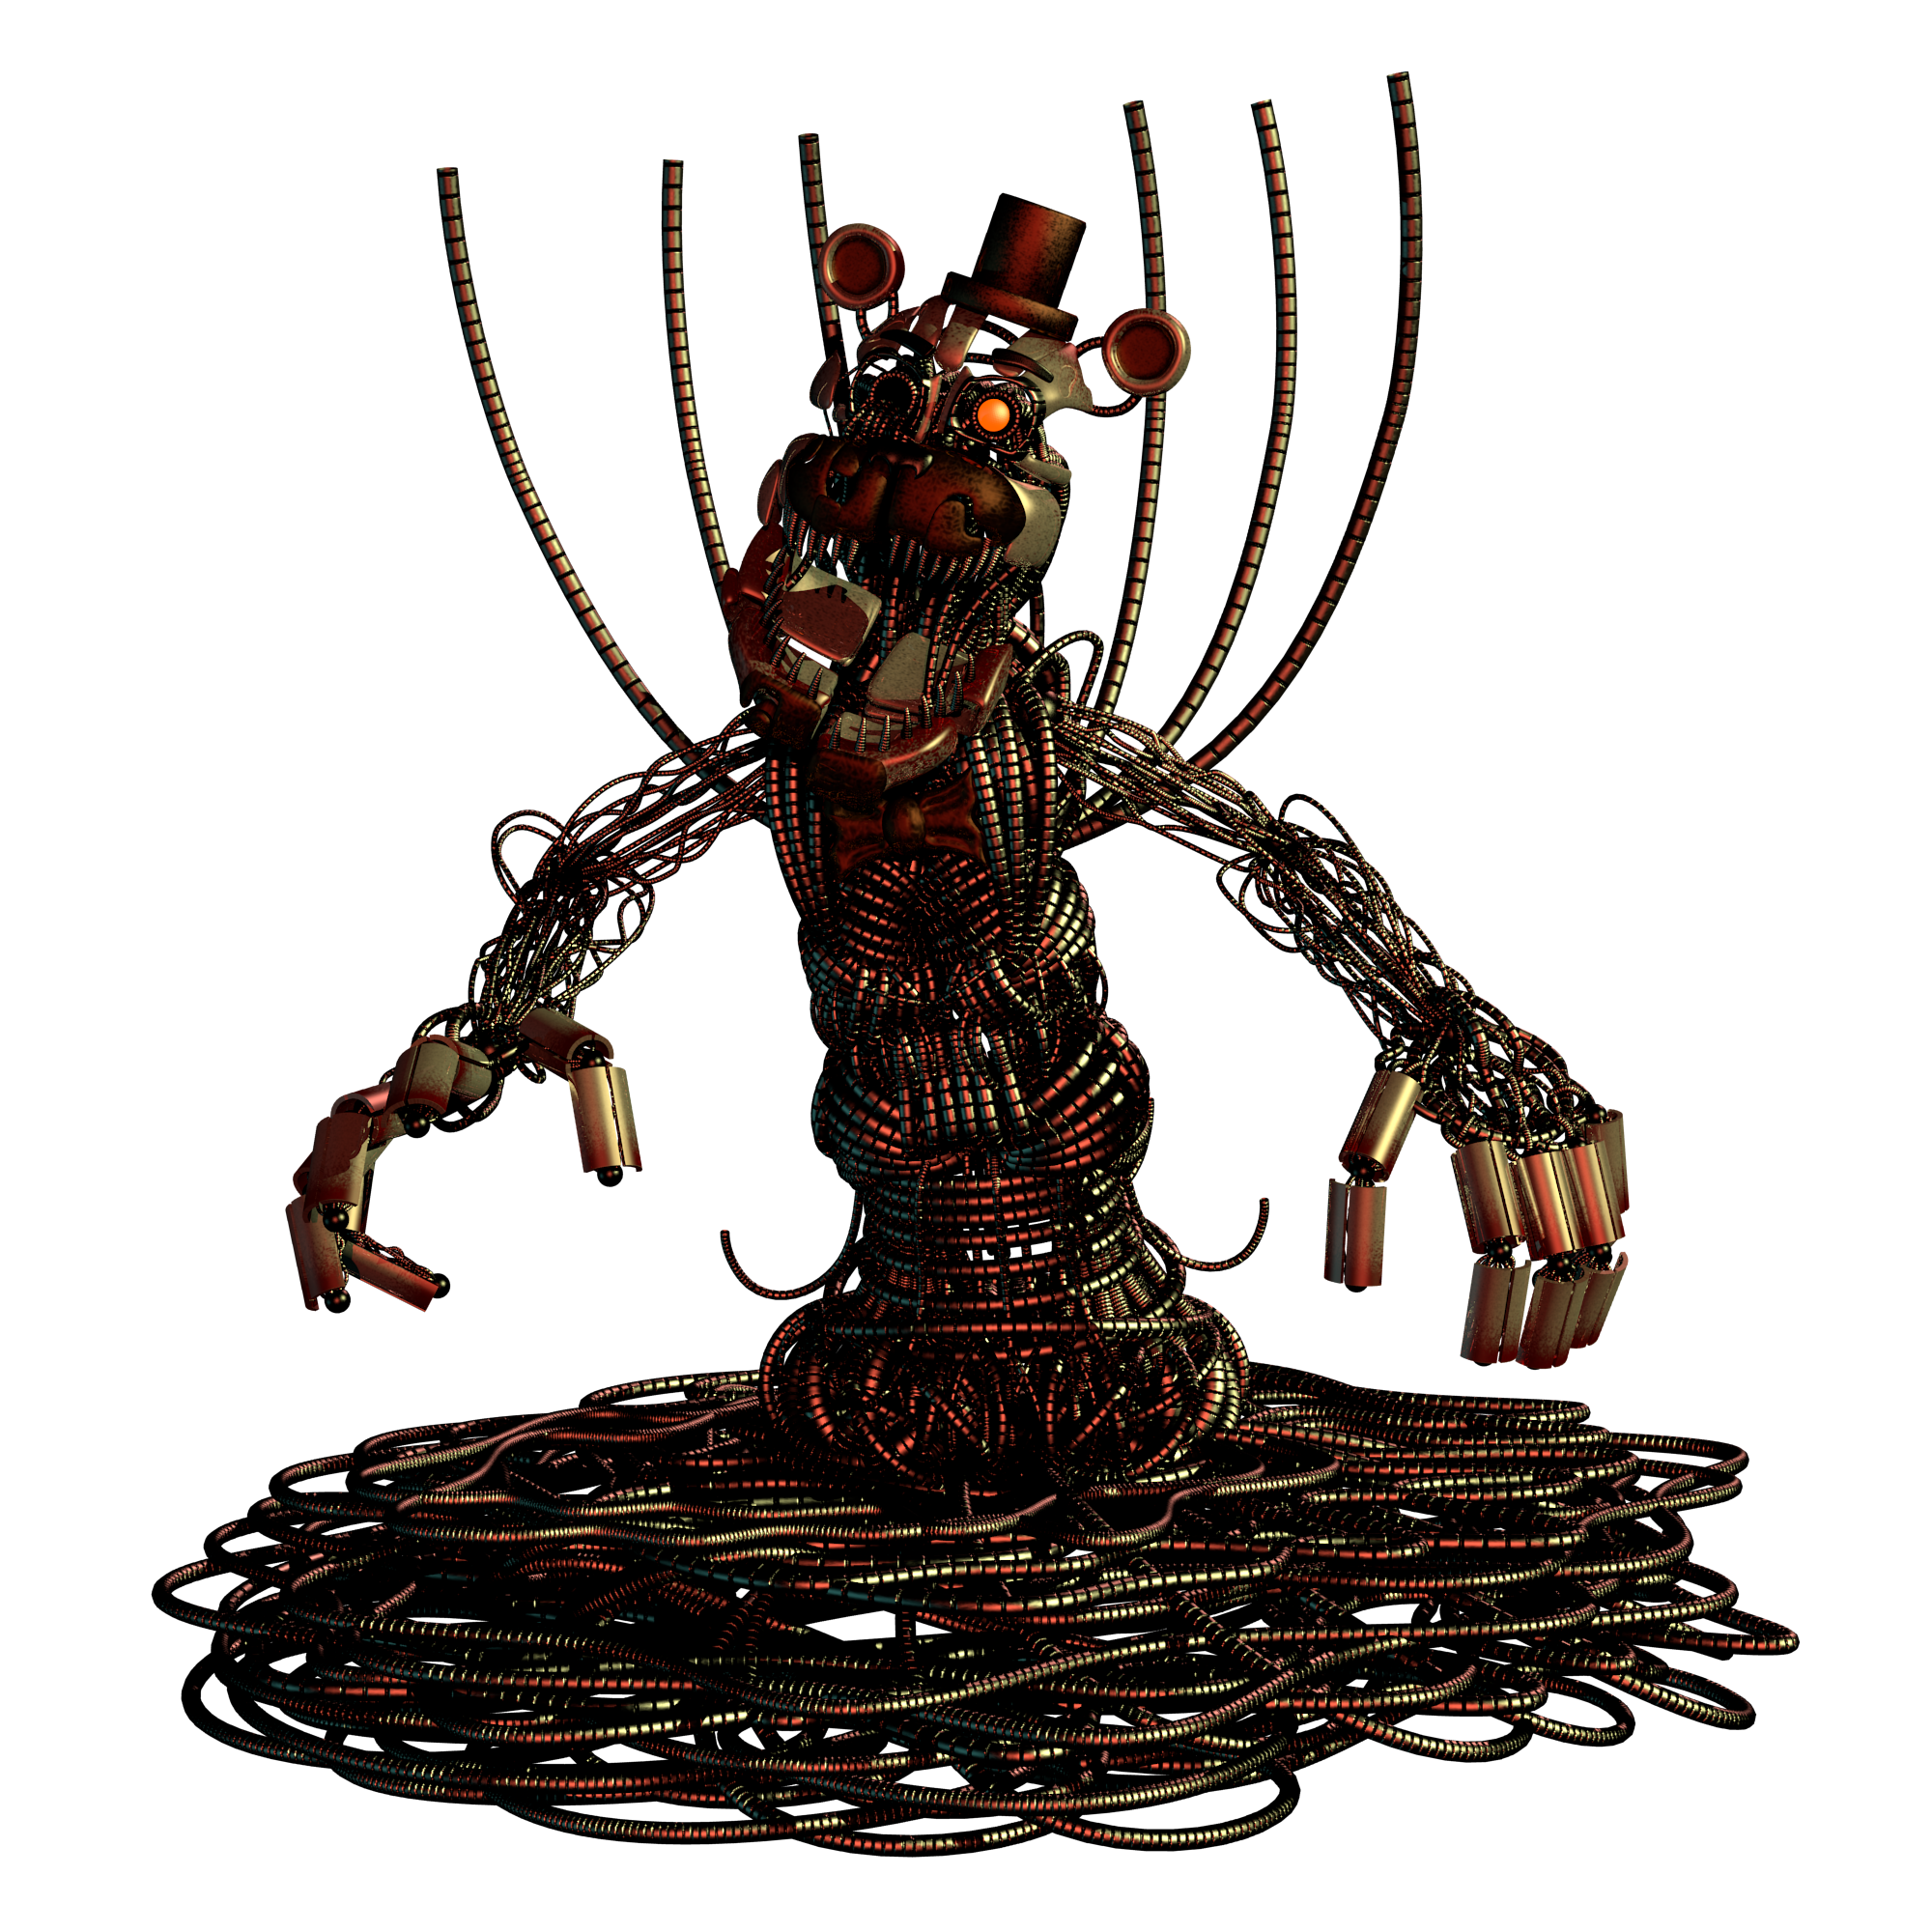 Molten Freddy by Eldritas on DeviantArt